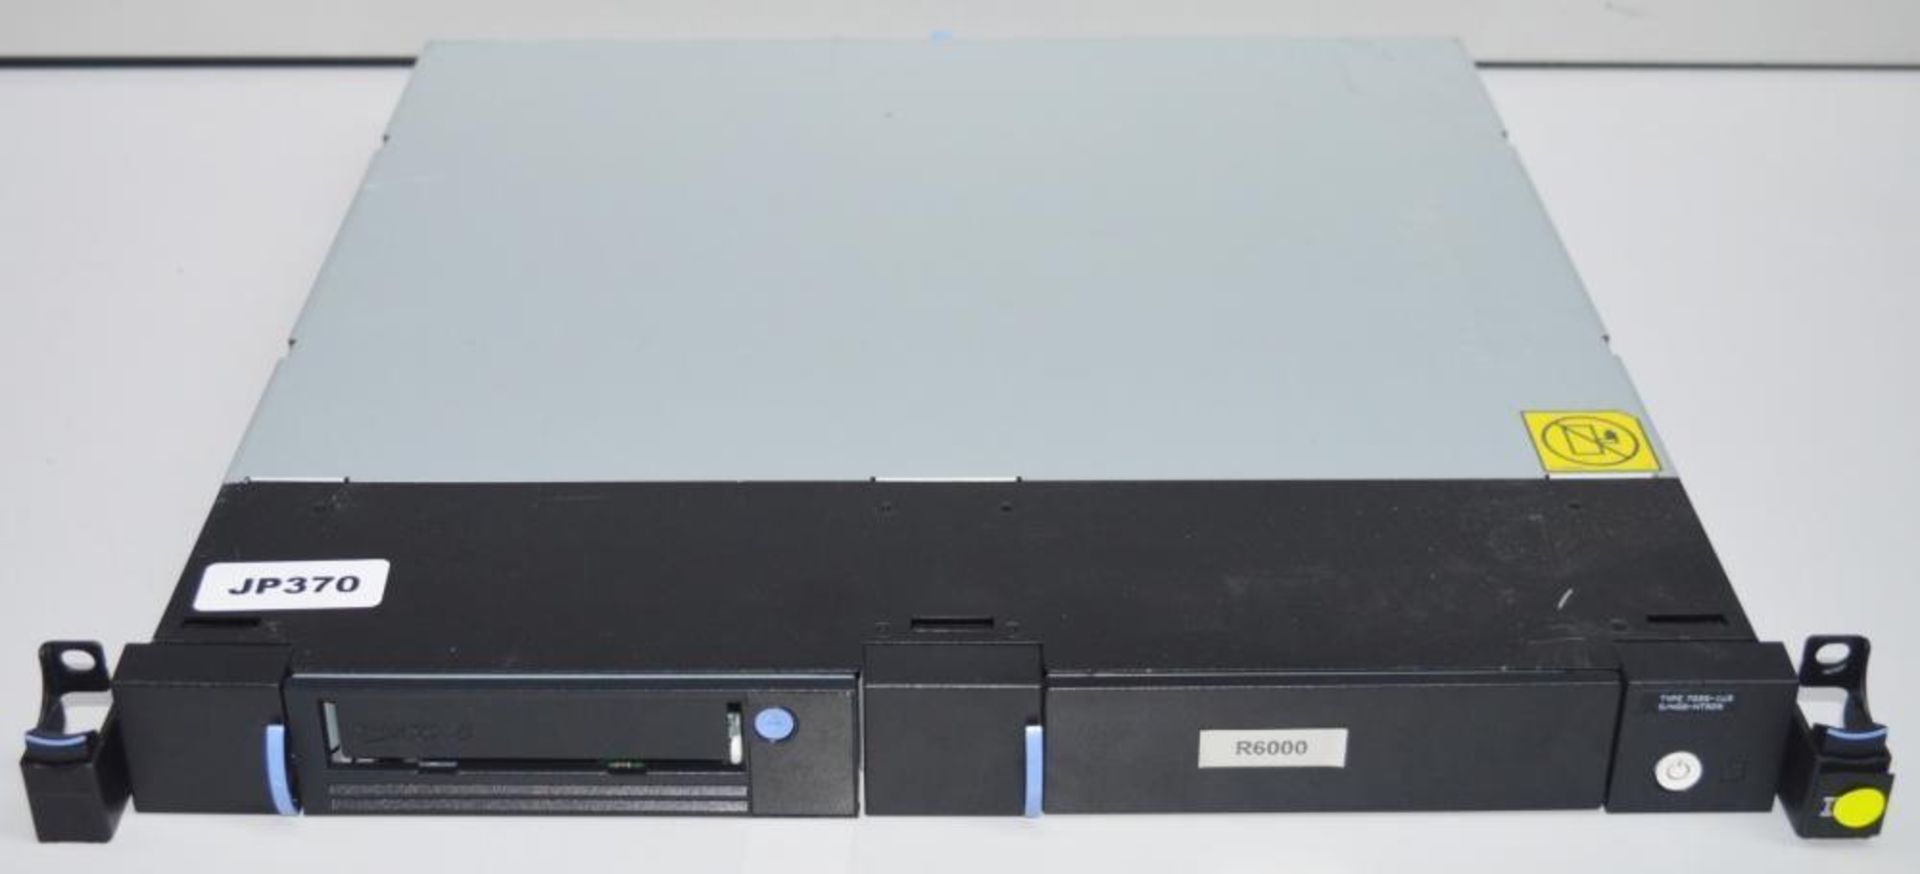 1 x IBM System Storage 7226 Model 1U3 Multi-Media Enclosure - Ref JP370 - CL285 - Location: Altrinch